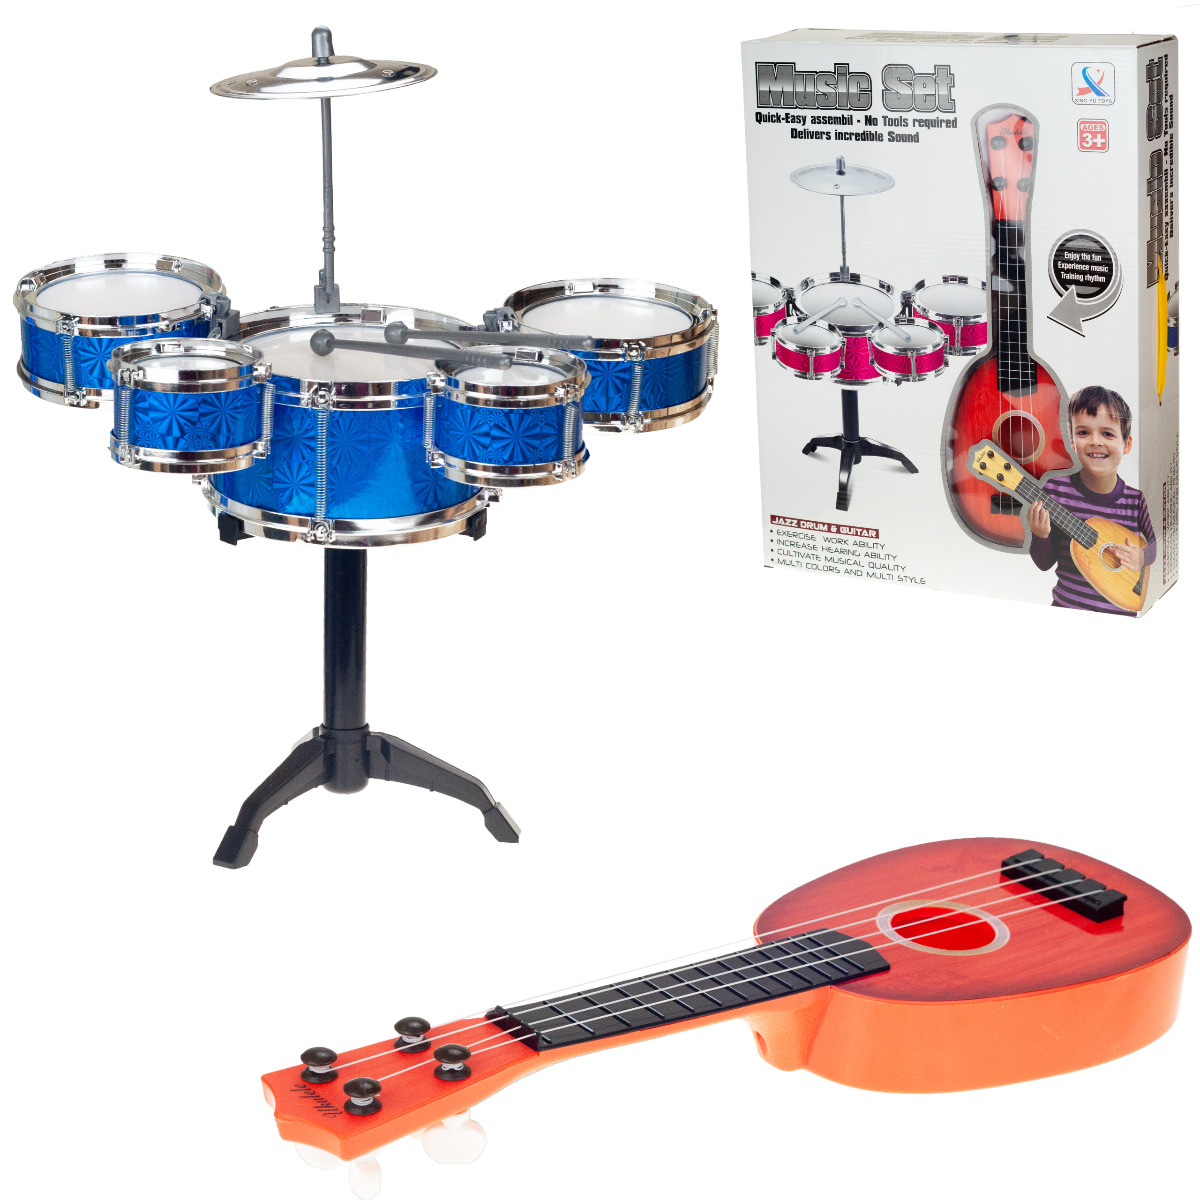 Musikinstrumente Set für Kinder: Ukulele, Trommeln, Gitarre, Teller und mehr 